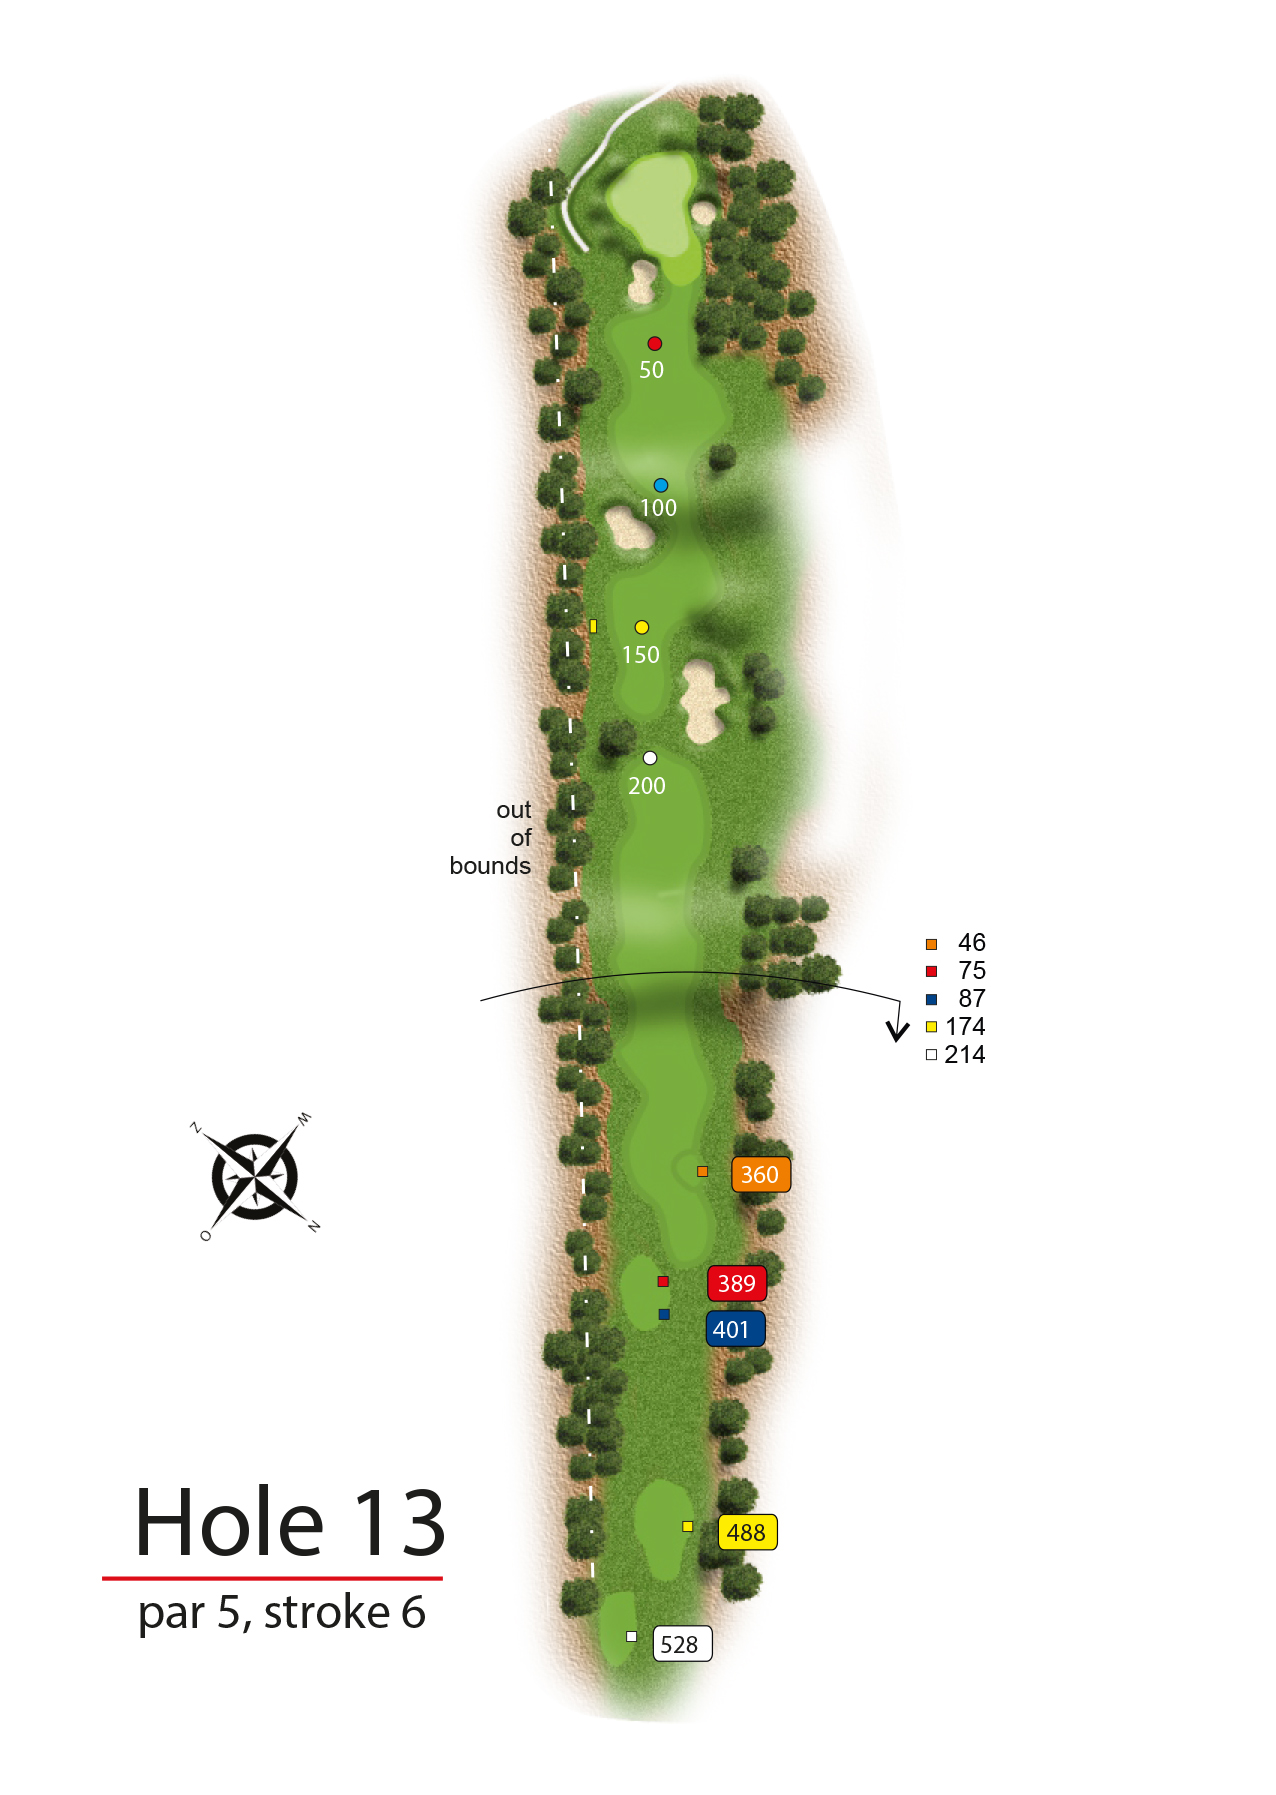 Hole 13 - simple